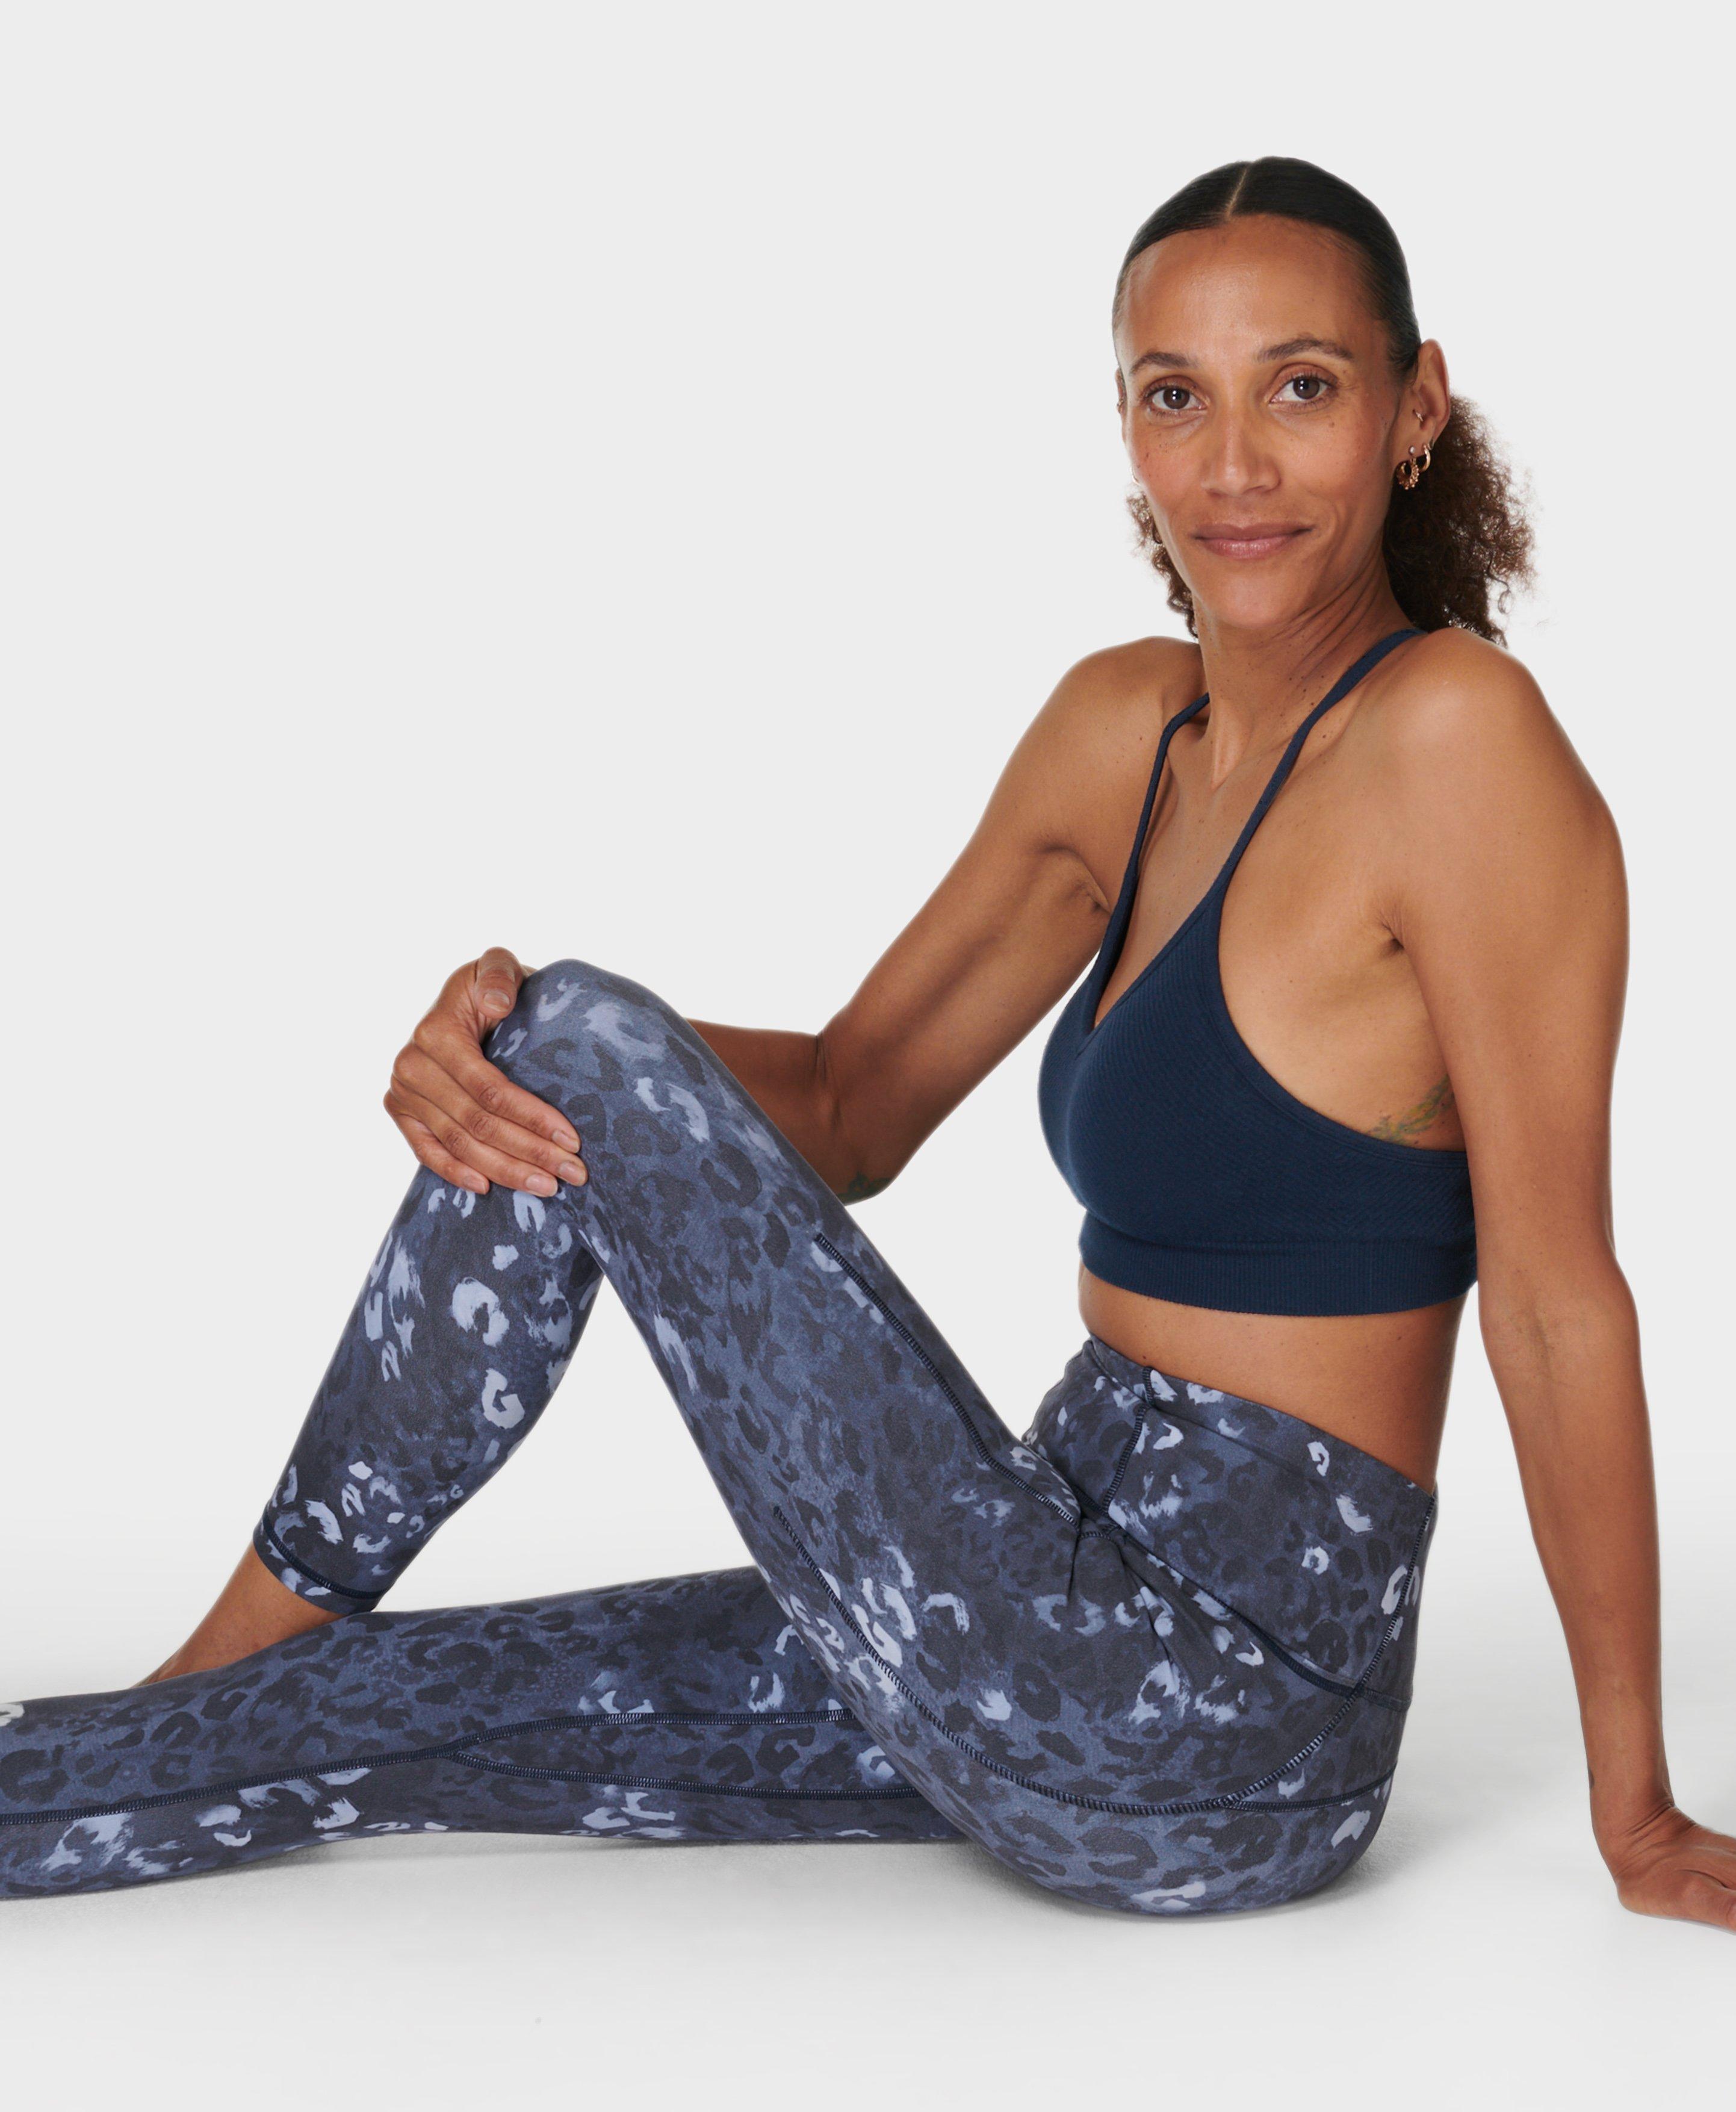 Super Soft 7/8 Yoga Leggings - Blue Snow Leopard Print, Women's Leggings